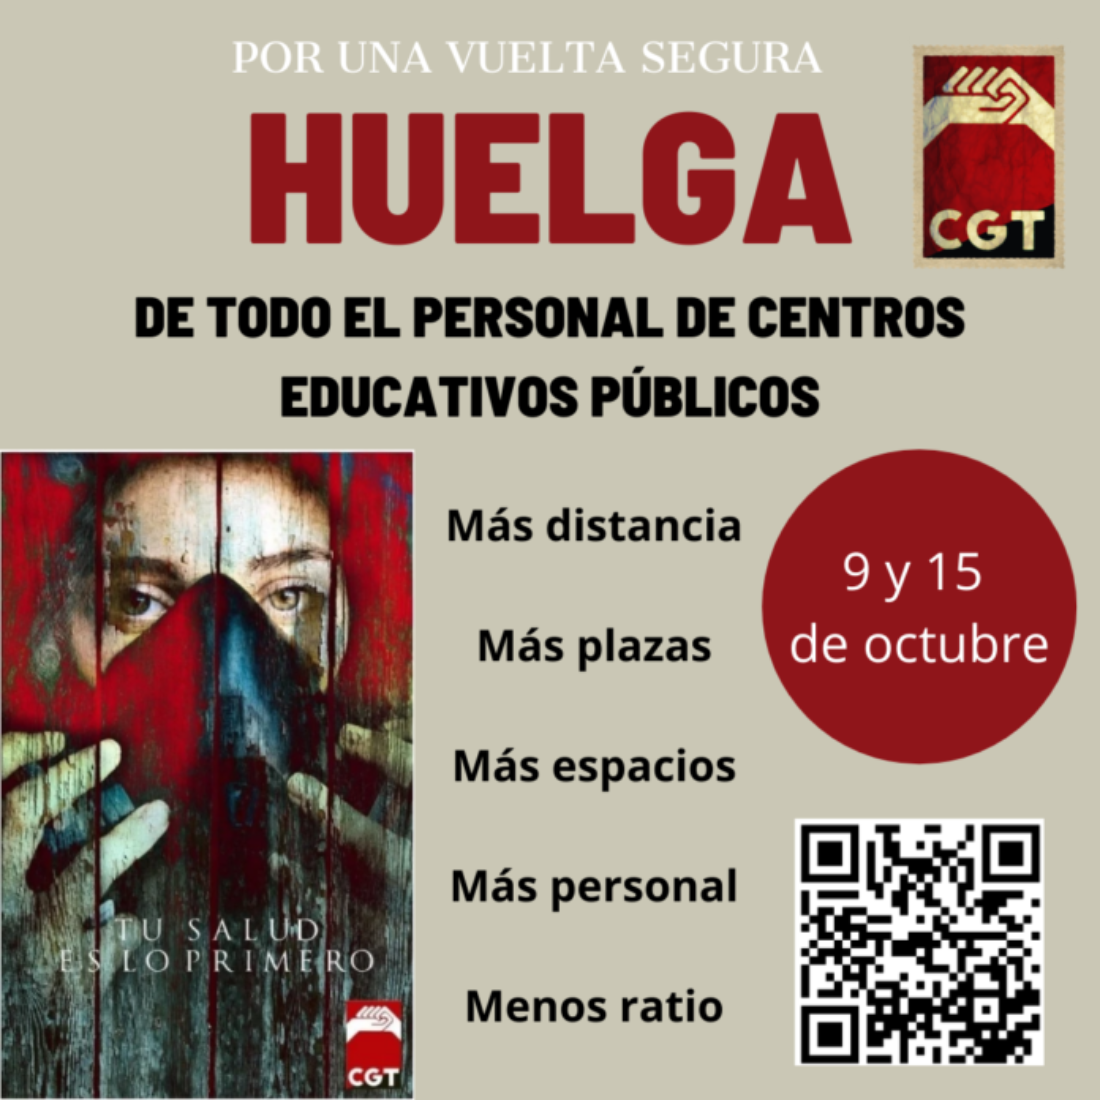 La complicidad de los sindicatos de la Mesa Sectorial destruirá la enseñanza pública en Andalucía